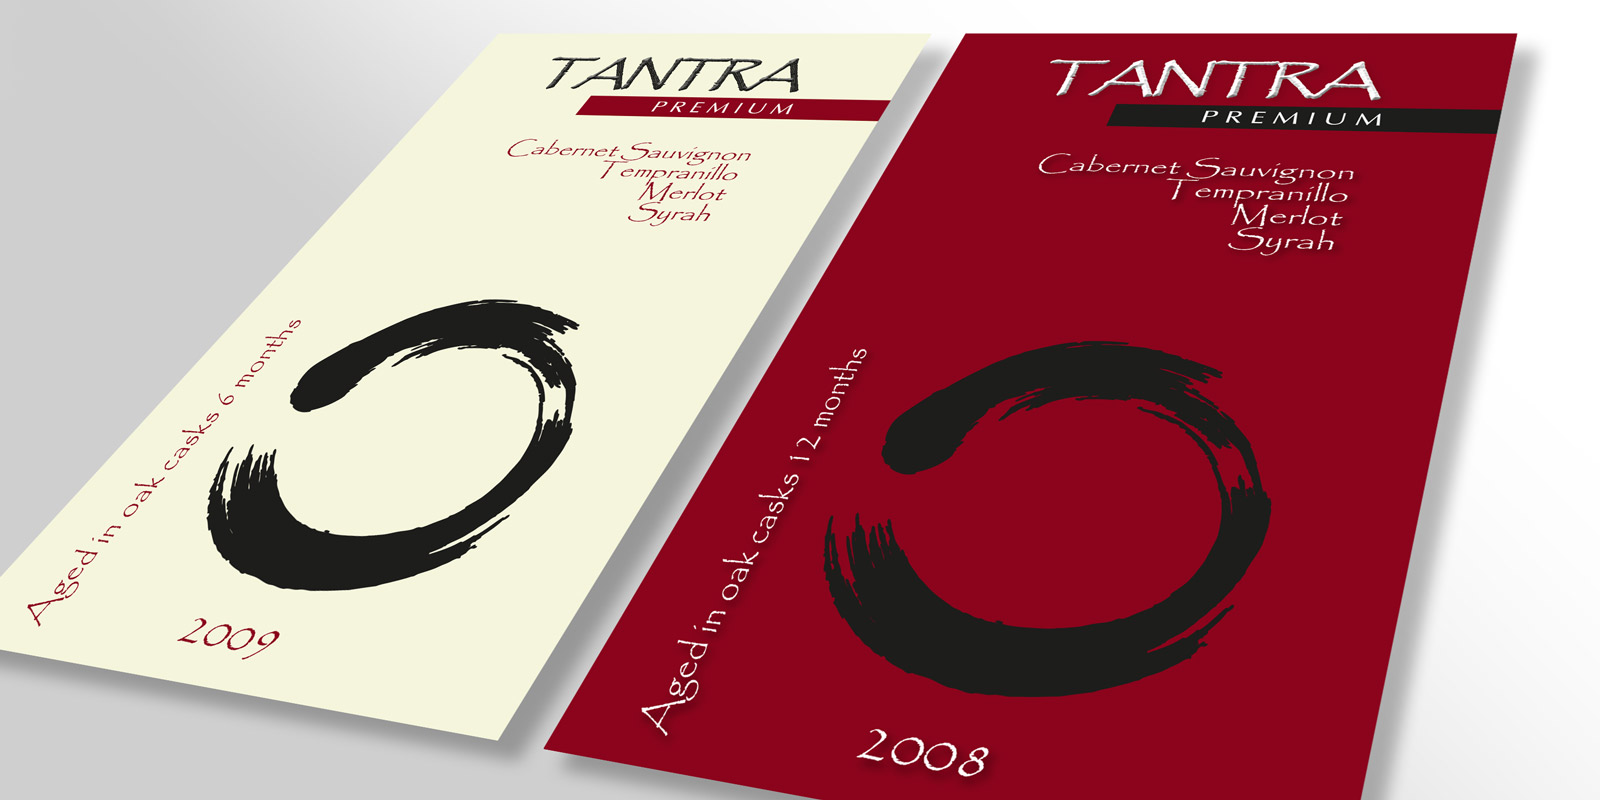 Diseño gráfico y creativo de etiquetas y packaging de vino para TANTRA